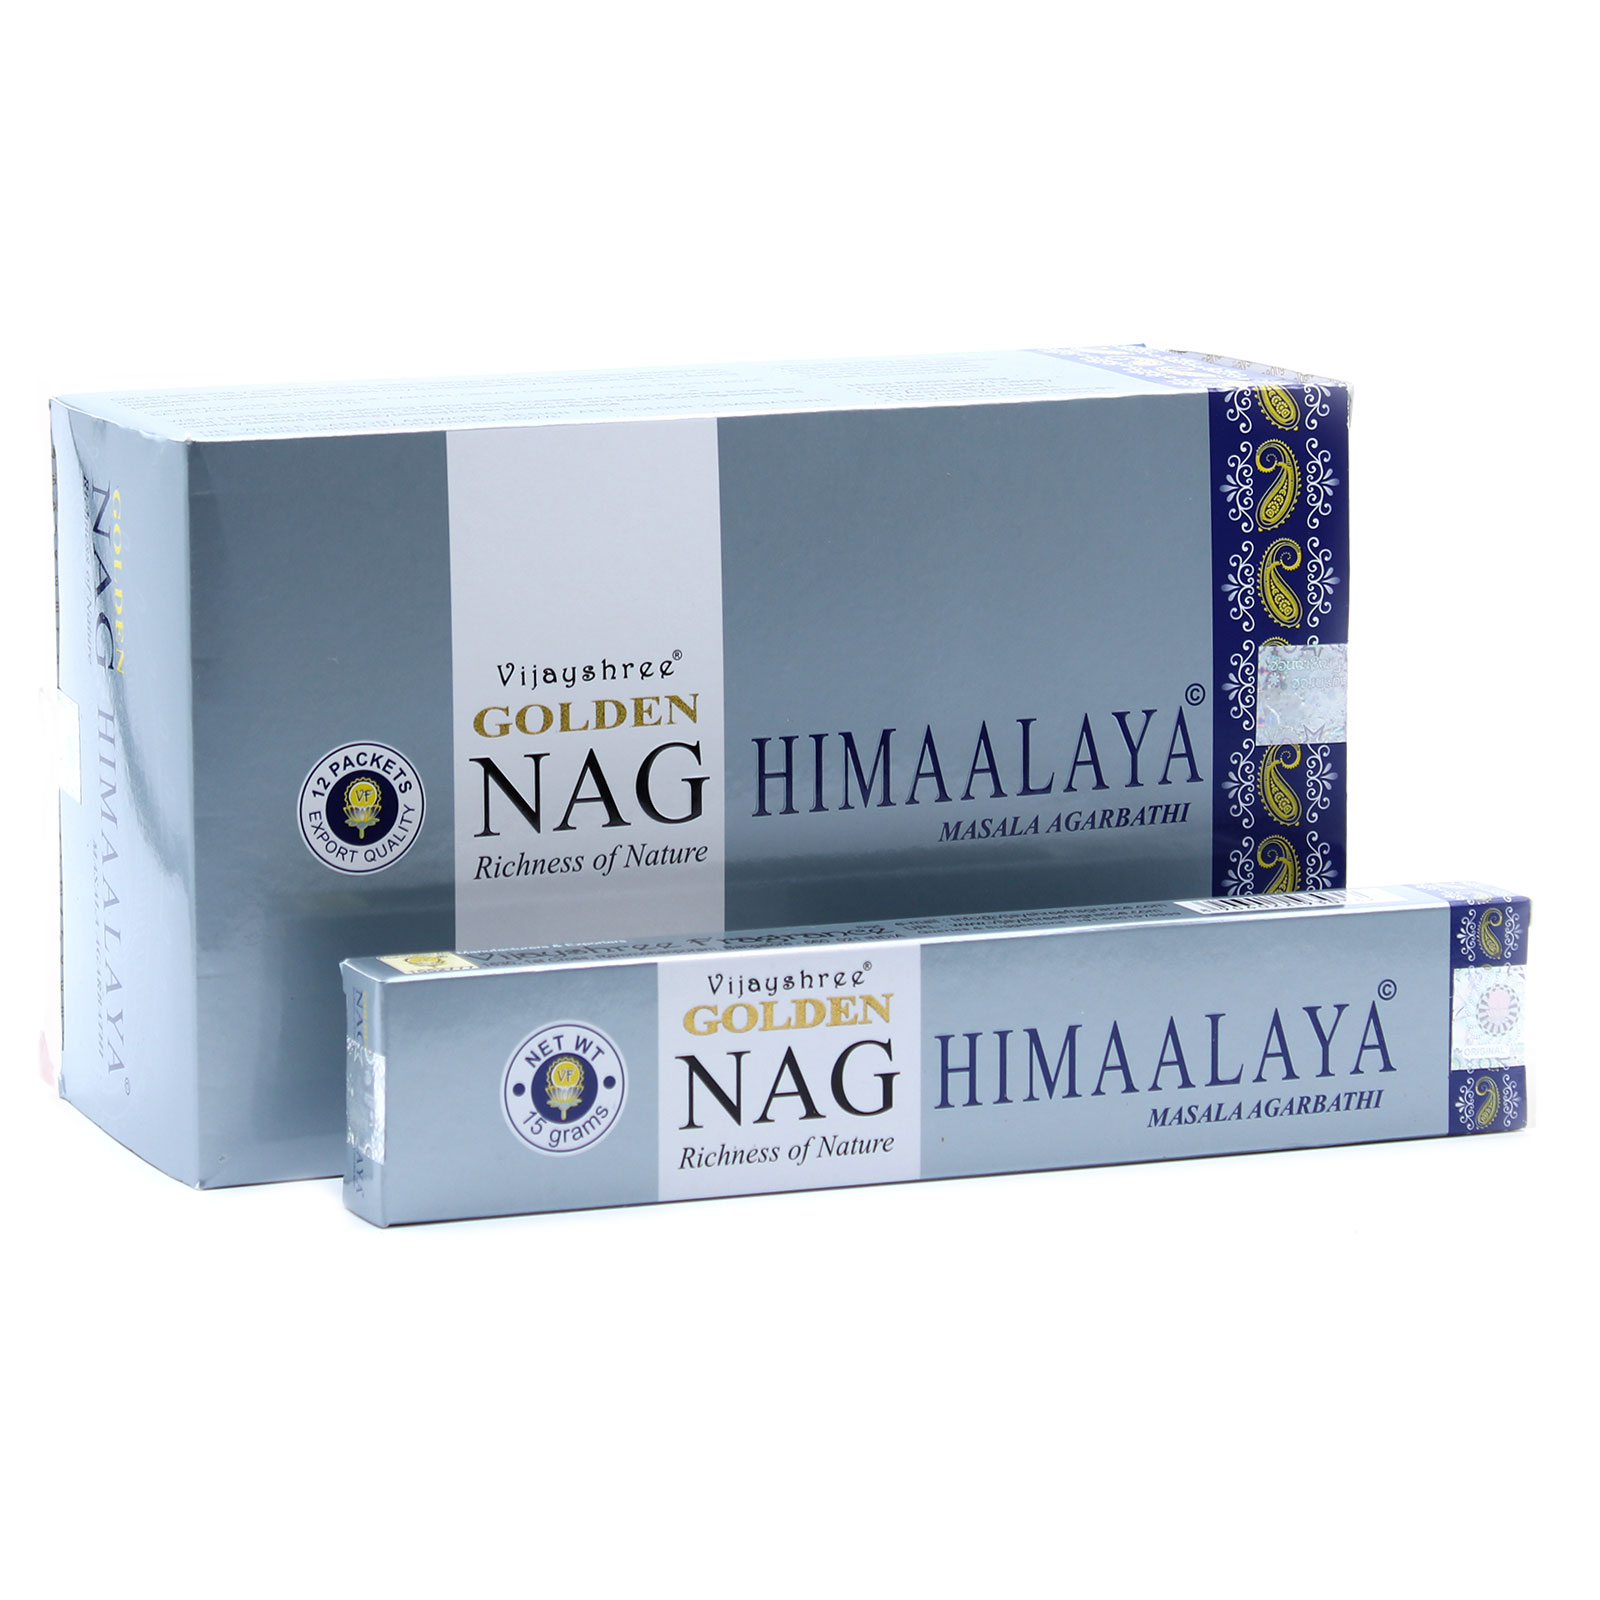 3 x Packs 15g Golden Nag - Himalaya Incense